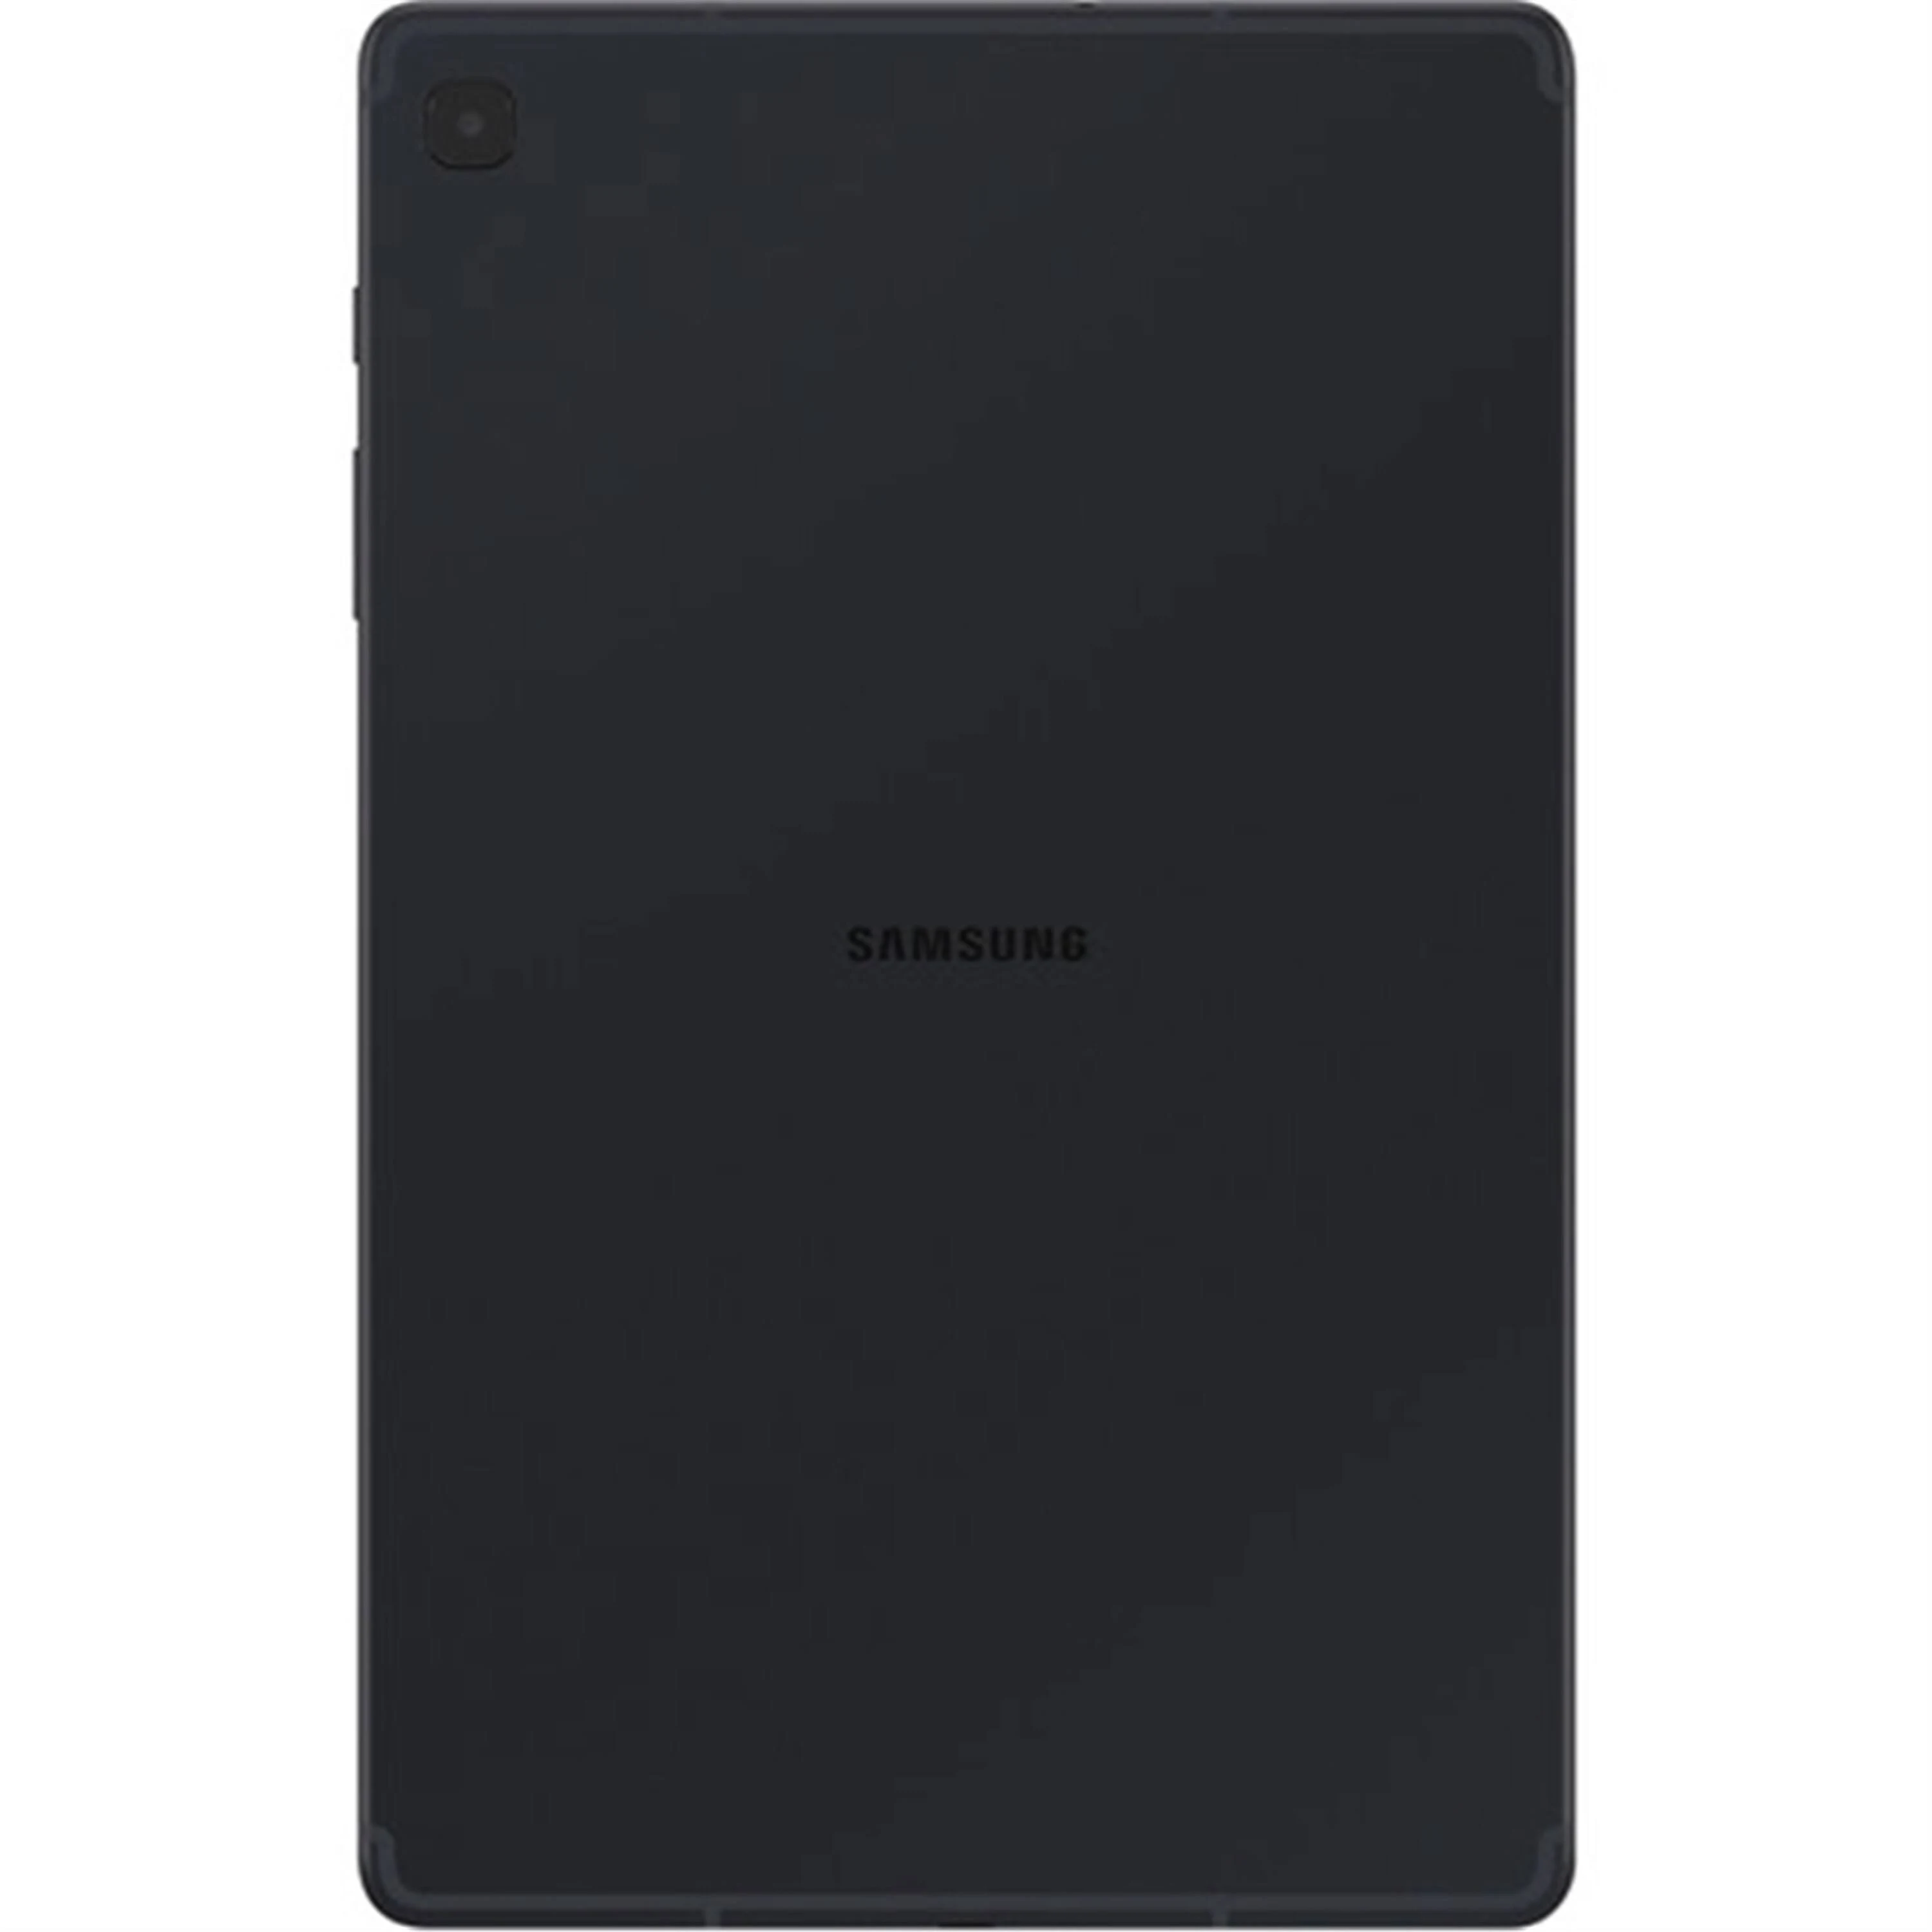 Samsung Galaxy Tab S6 Lite 10.4″ Tablet 64gb WiFi Samsung Exynos 9610 2.3GHz, Oxford Gray (Refurbished)